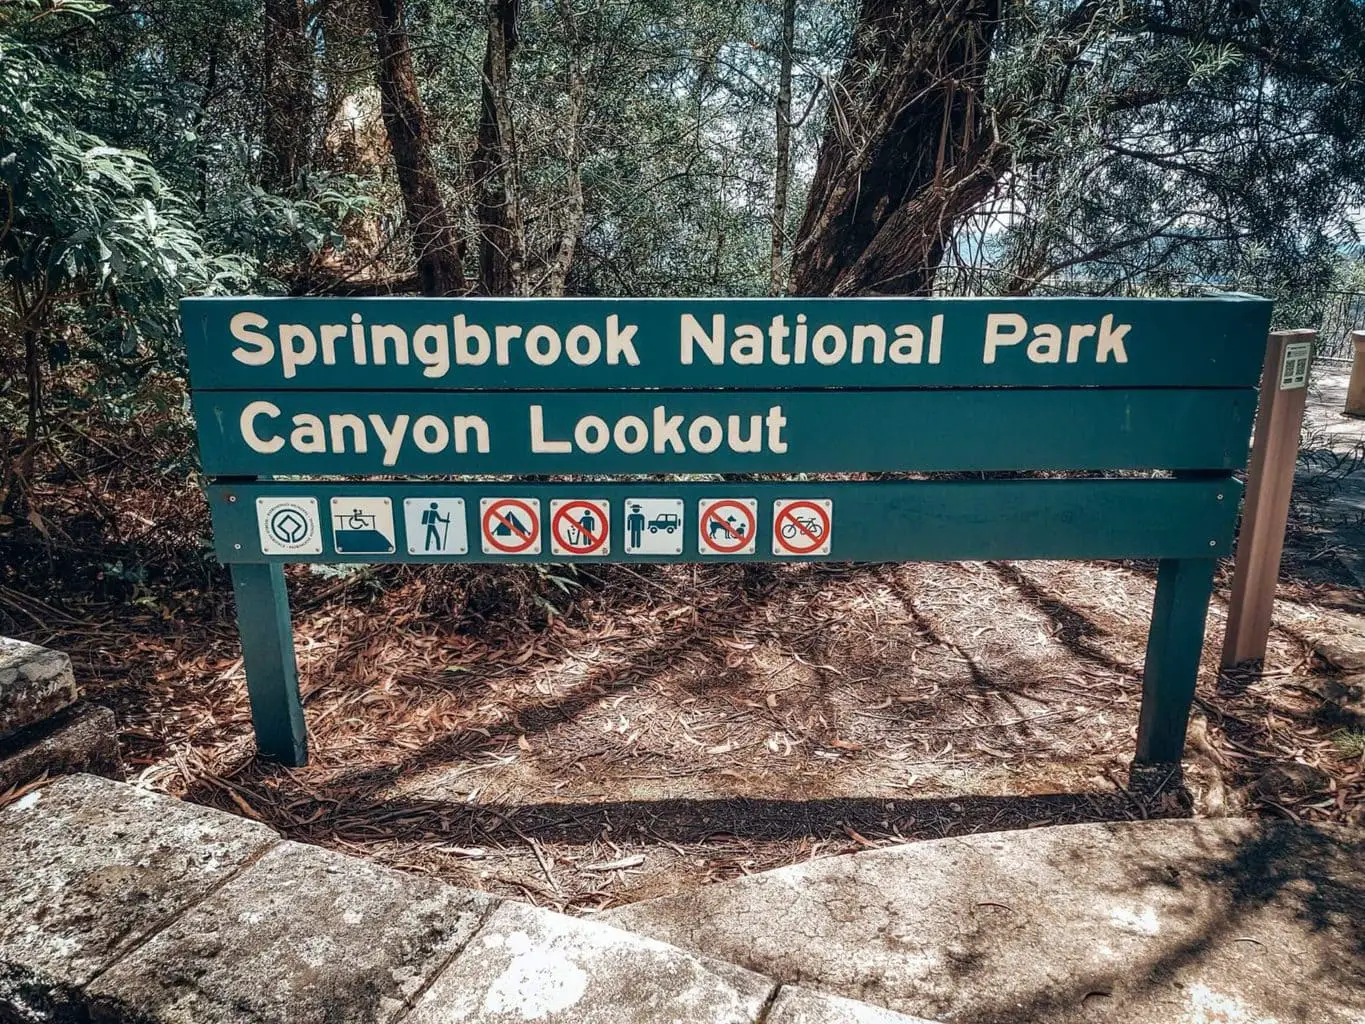 Canyon lookout, Springbrook National Park